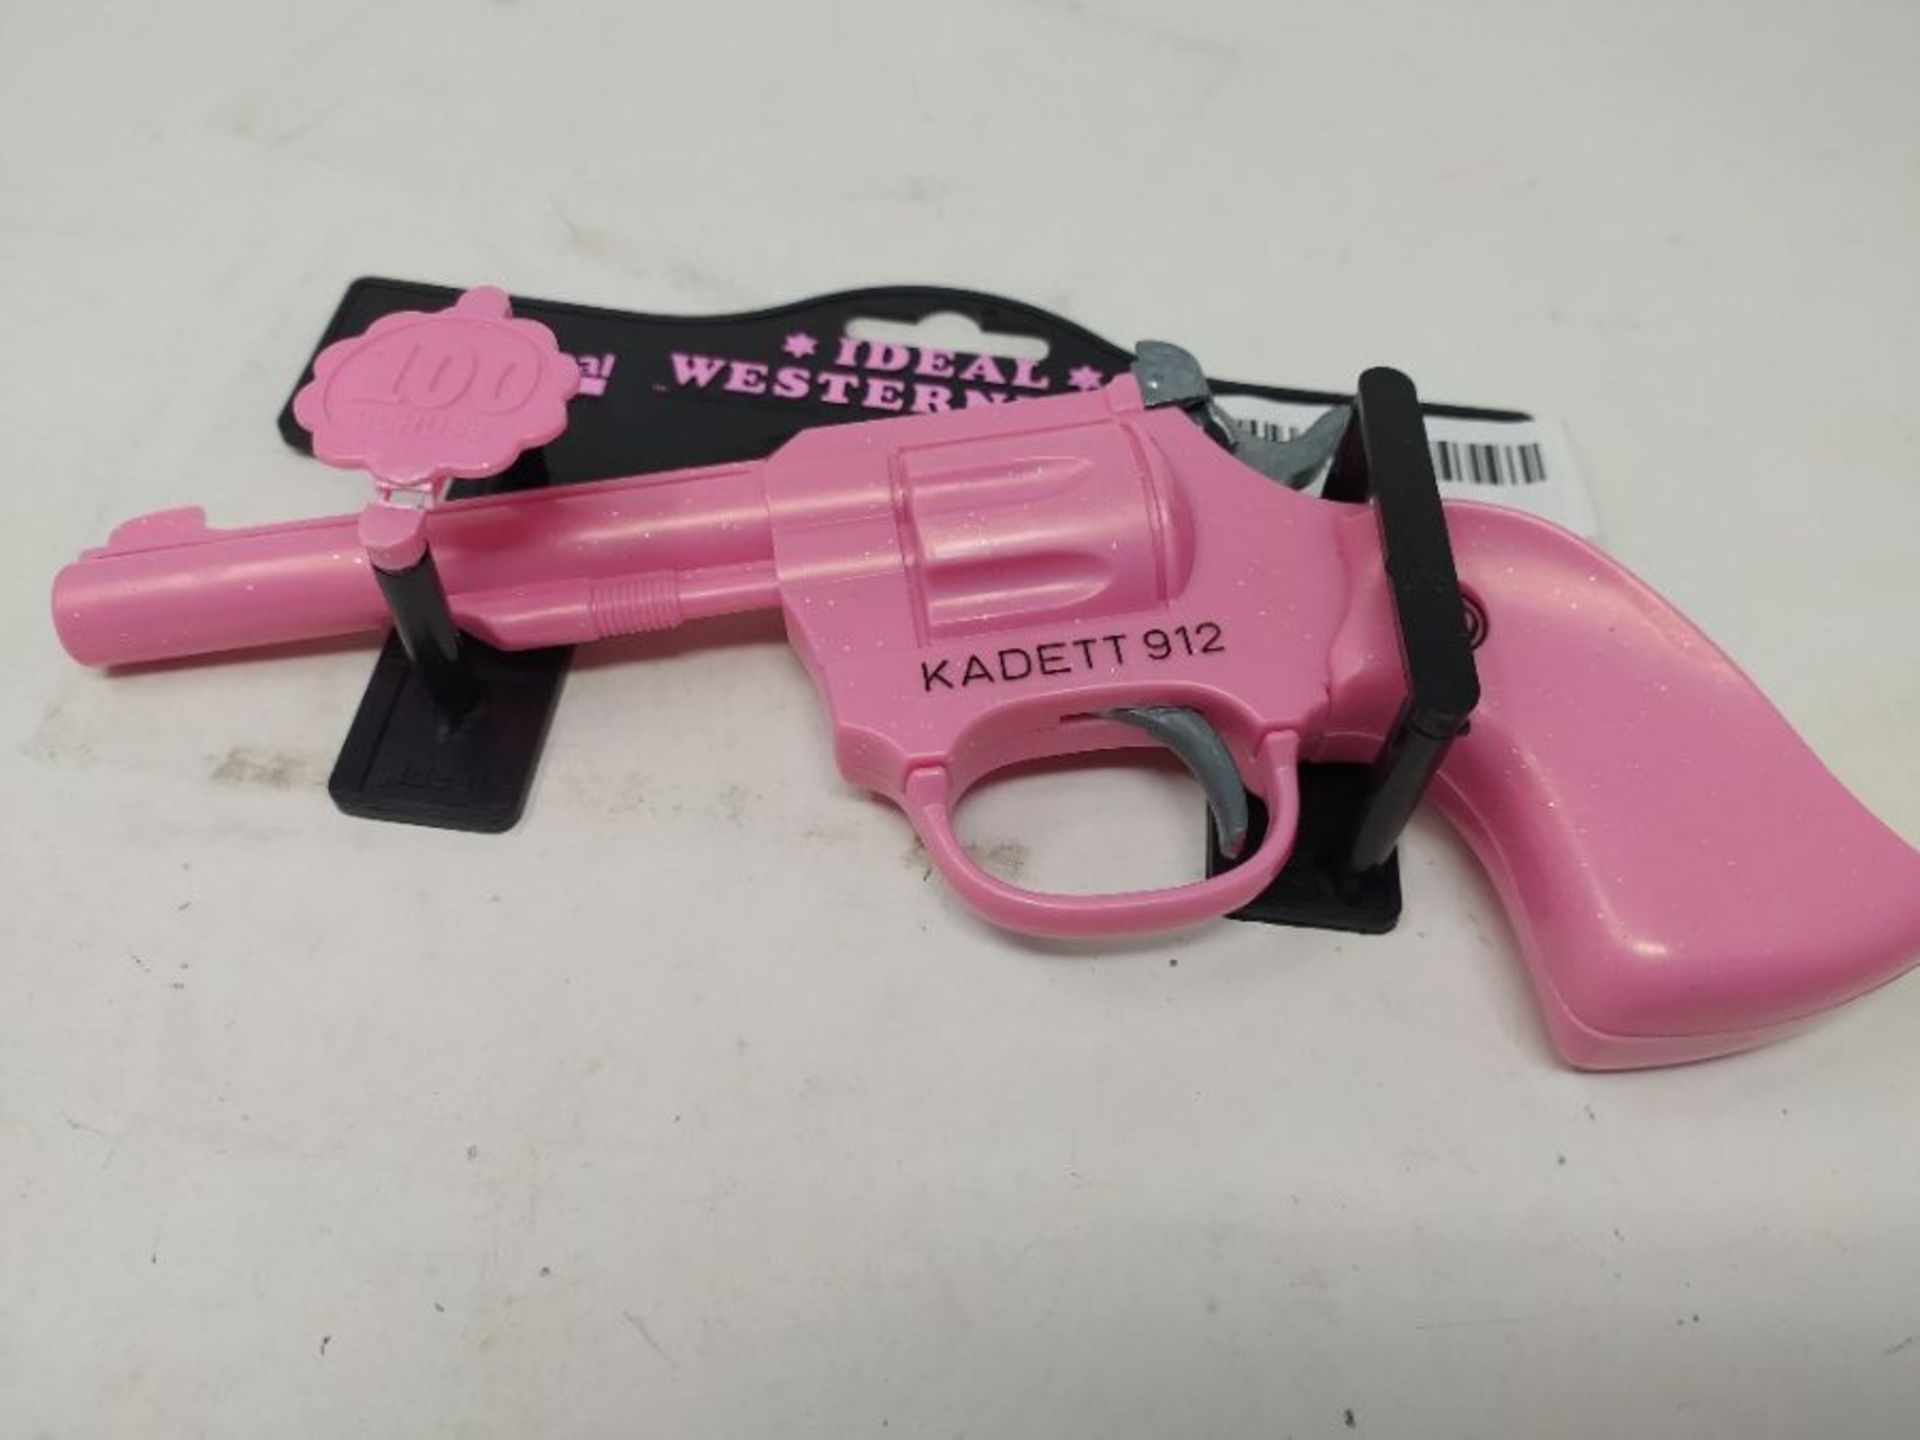 J.G. Schrödel 4029120 Kadett 100-Shot on Tester Pistol 19 cm Pink - Image 3 of 3